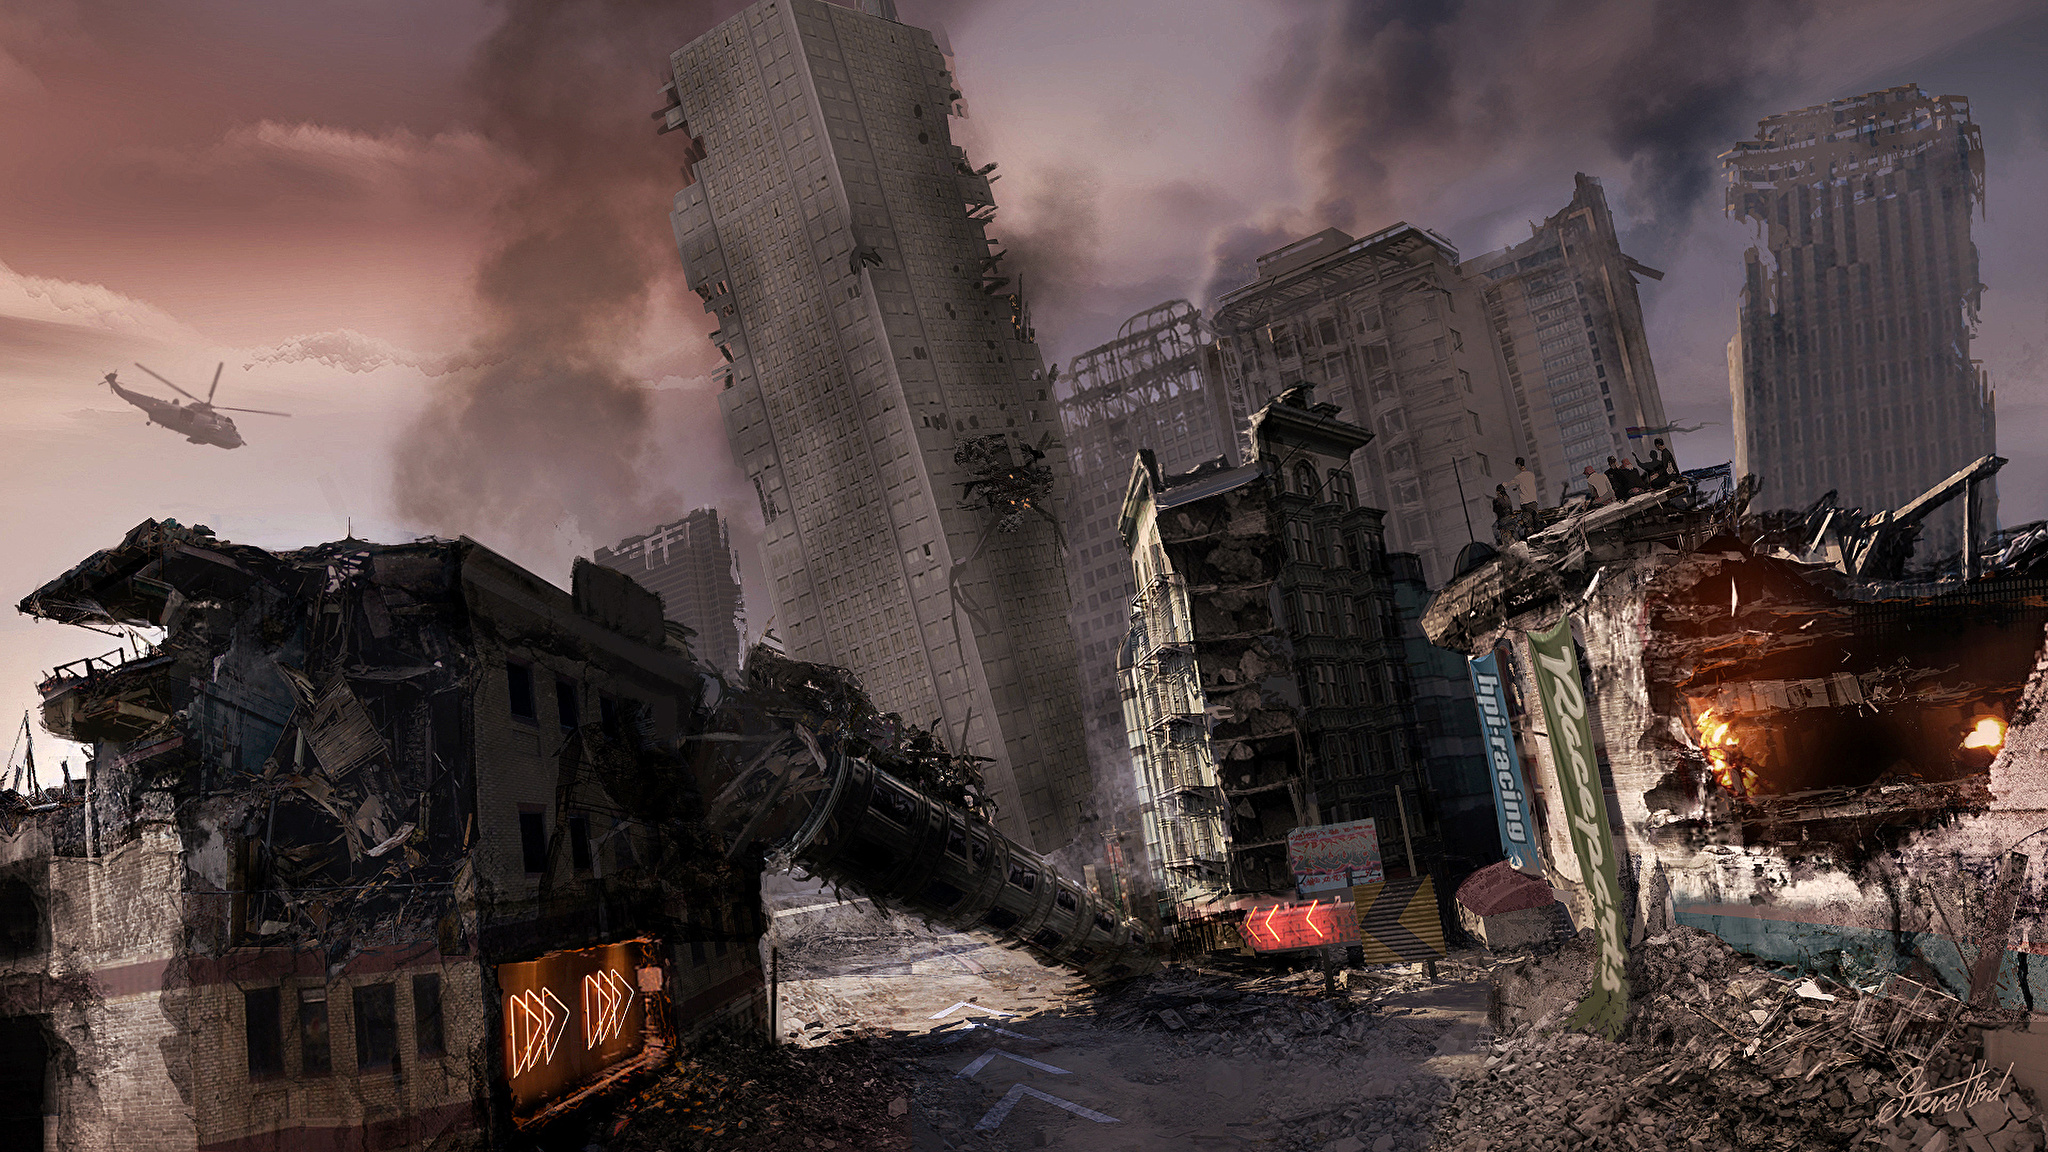 Что был сильно разрушен. MOTORSTORM Apocalypse Art. Разрушенный город. Разрушенное здание. Постапокалипсис город.